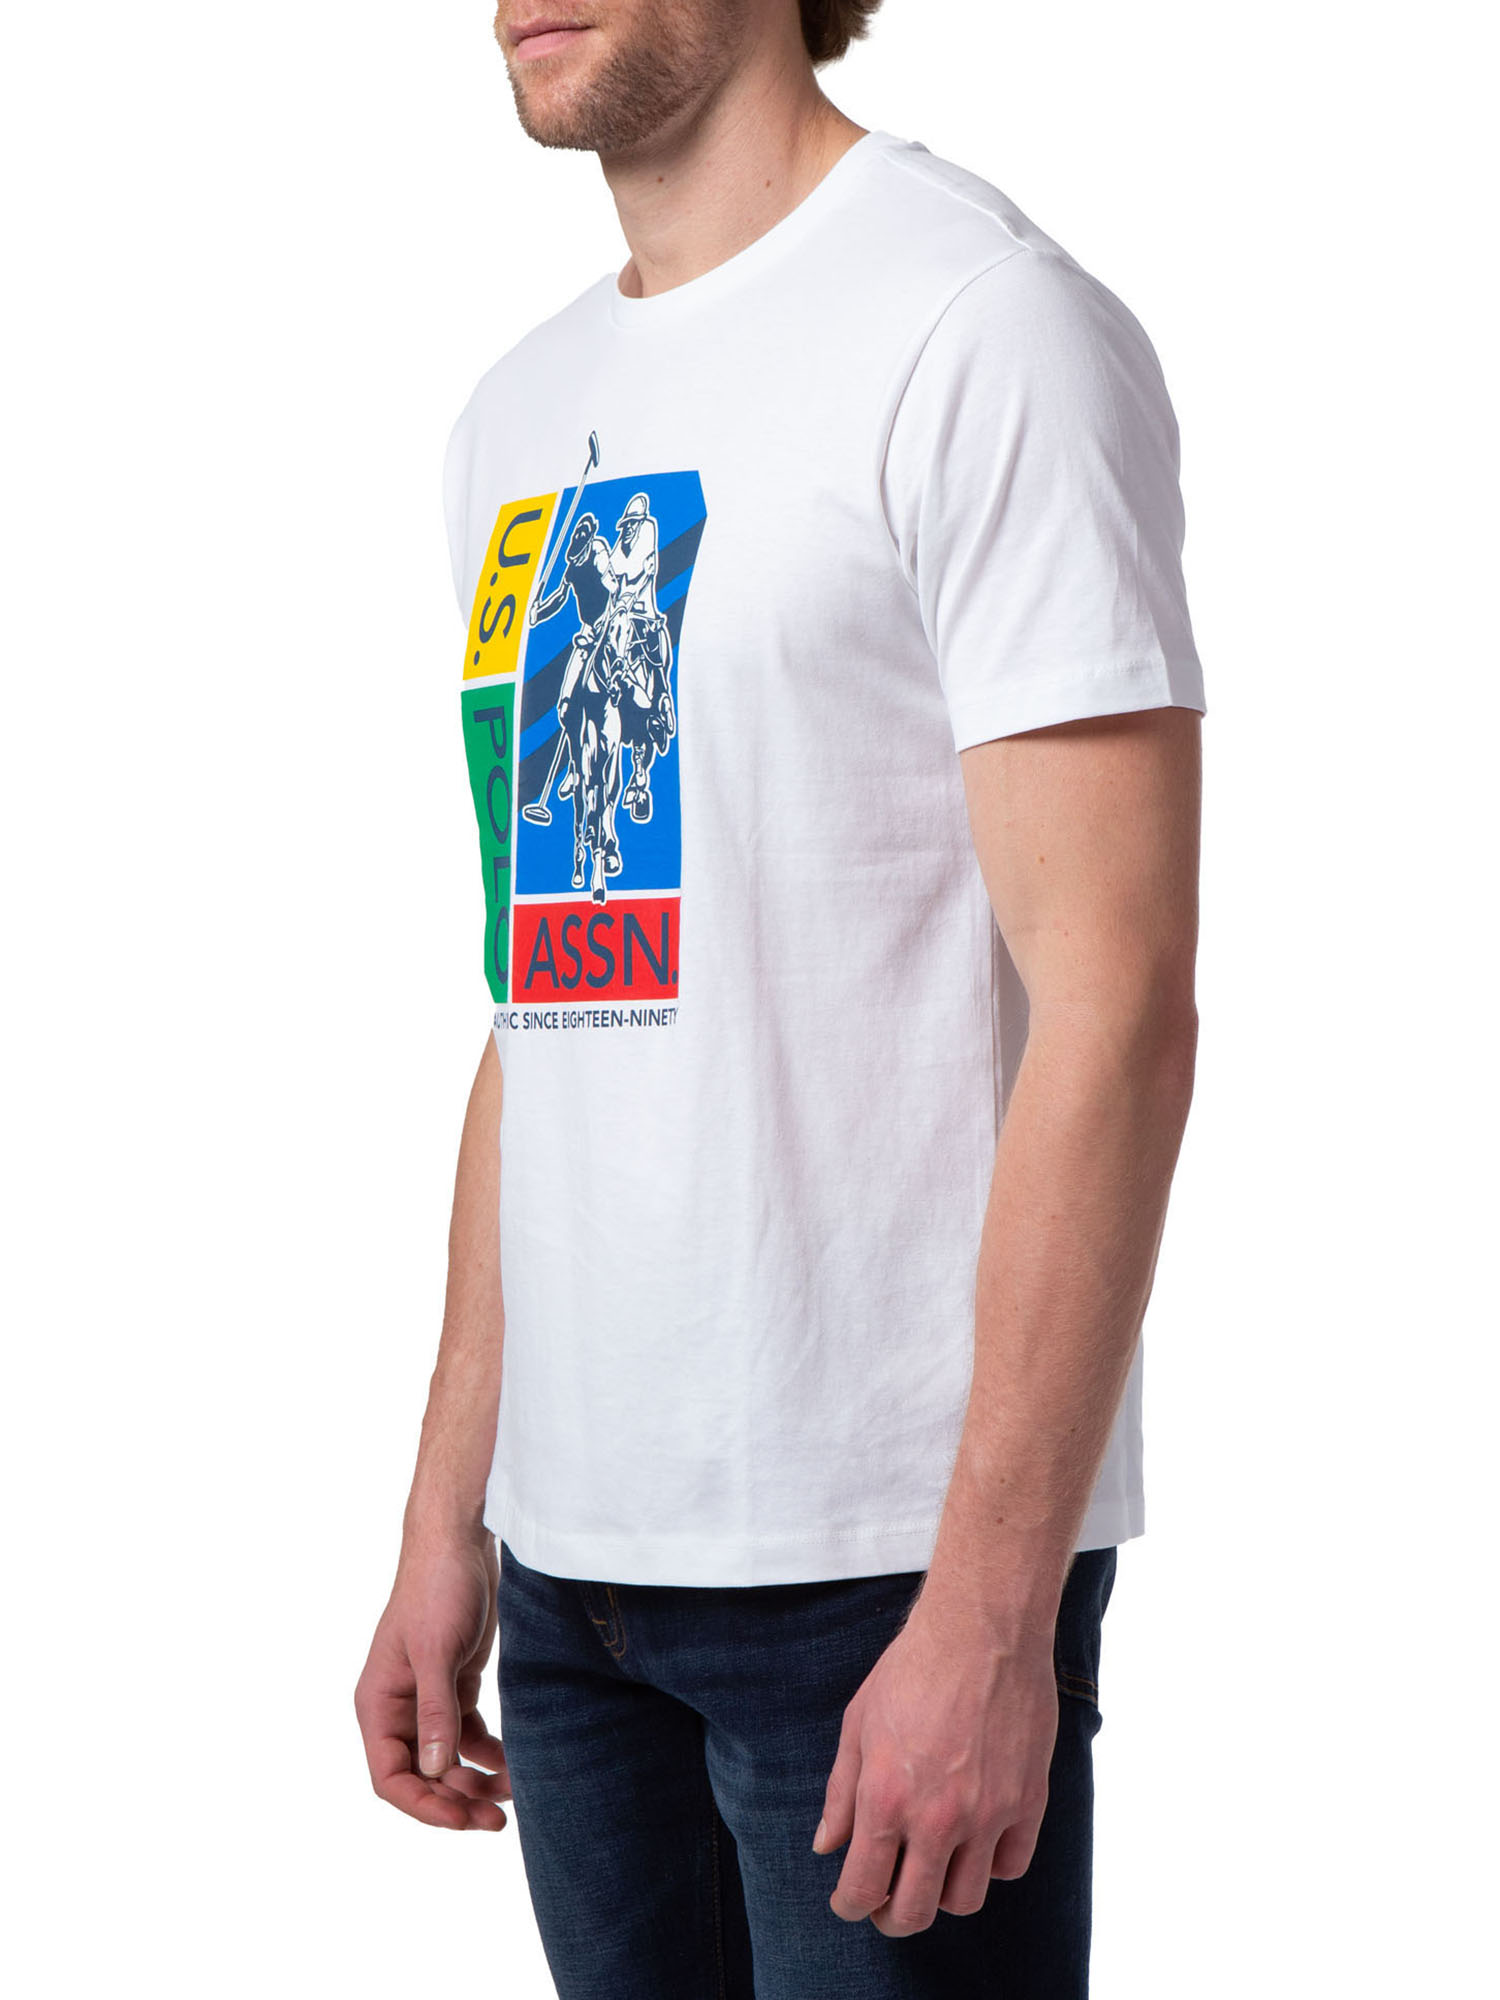 U.S. Polo Assn. Men's Short Sleeve T-Shirt - image 3 of 3